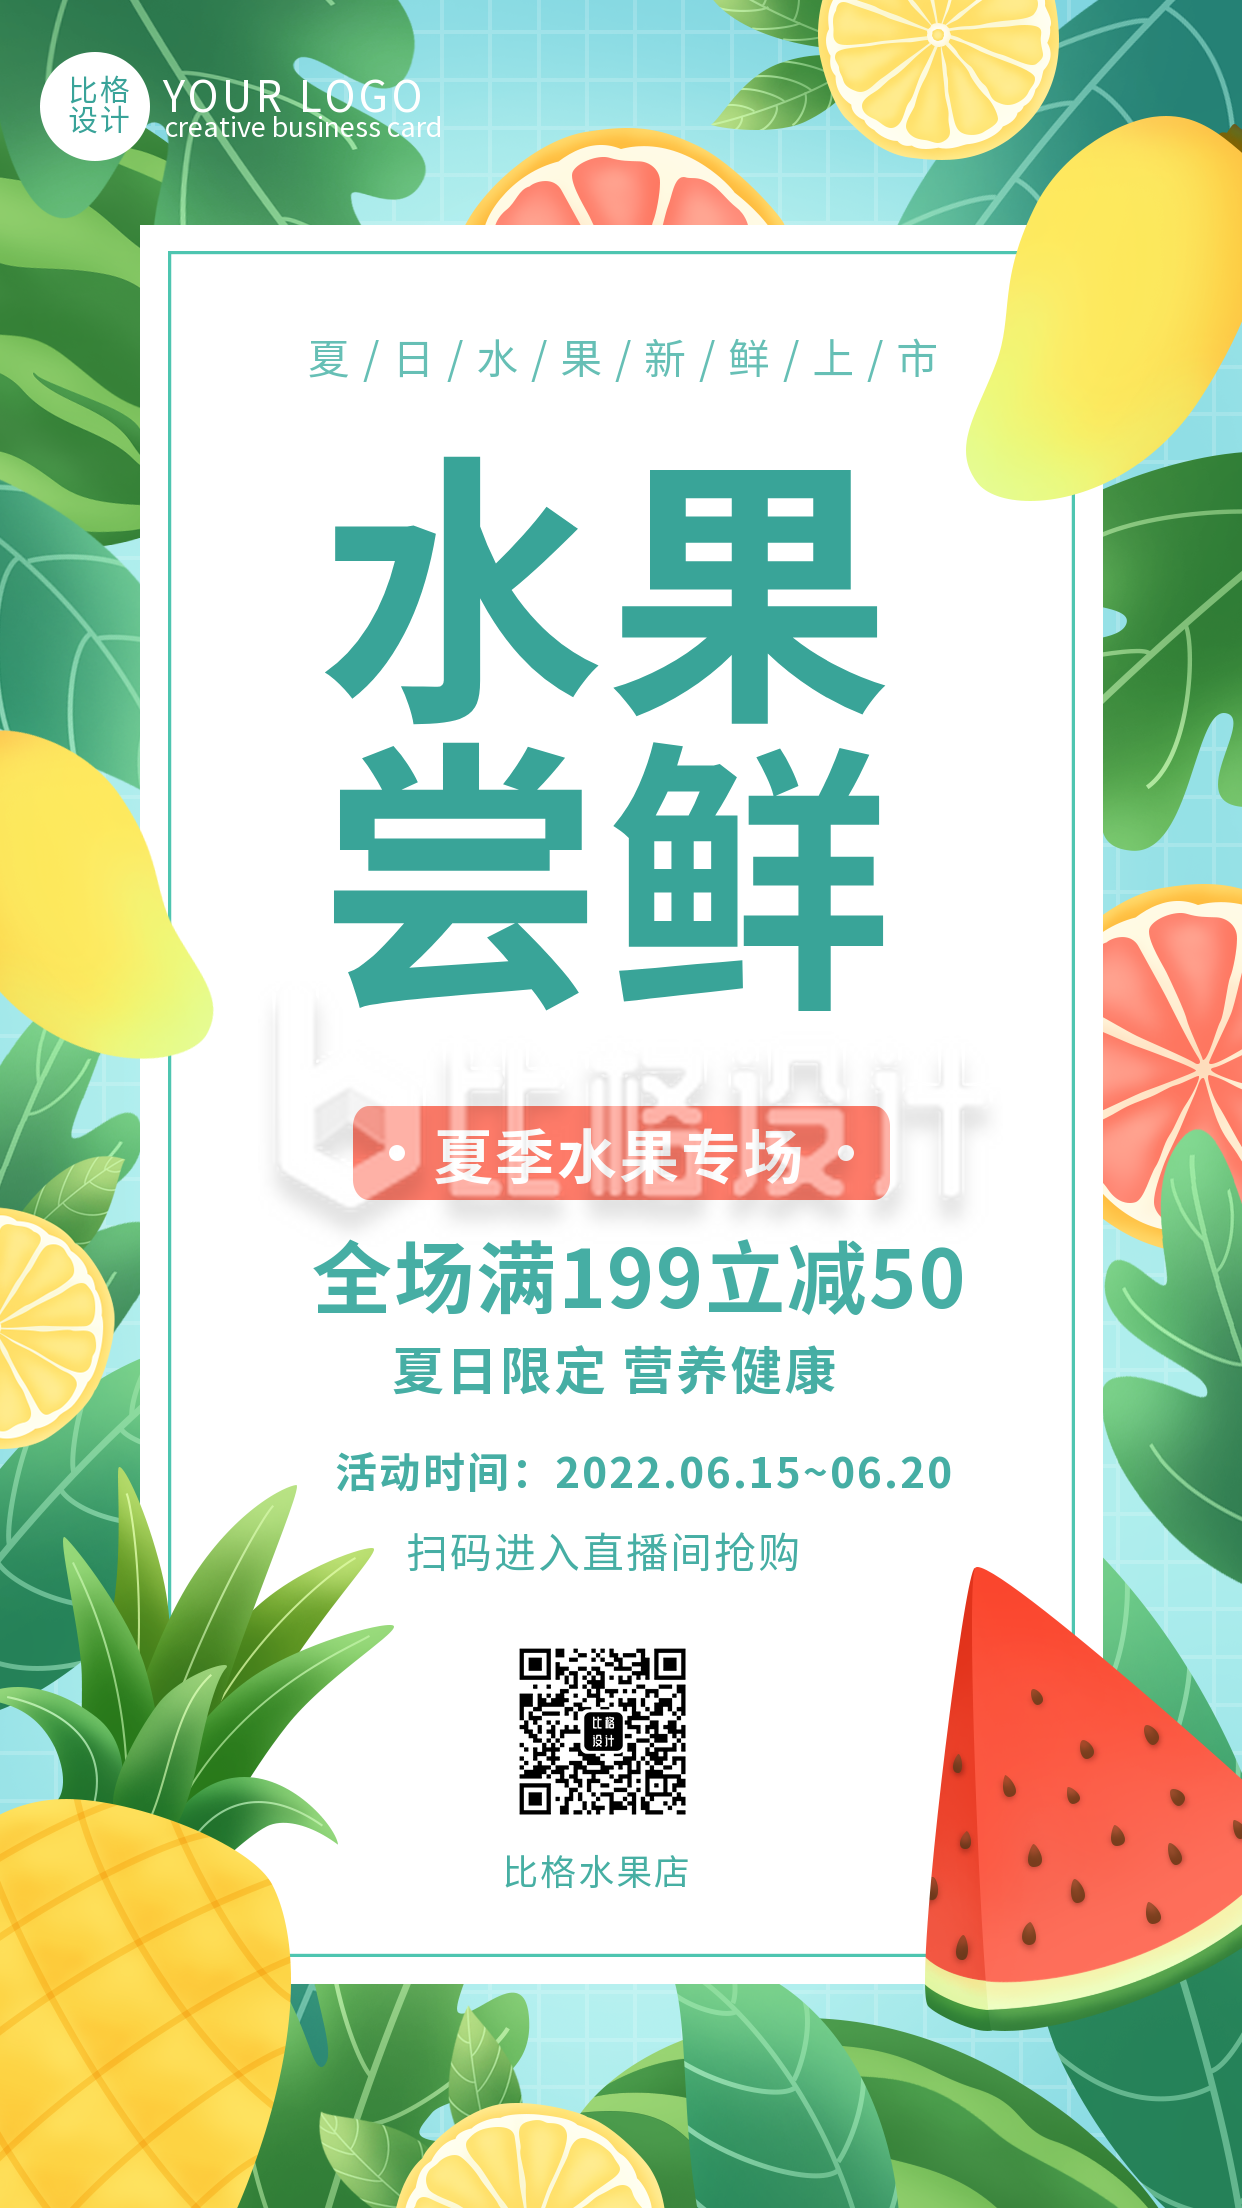 夏季限时促销水果优惠福利活动手机海报